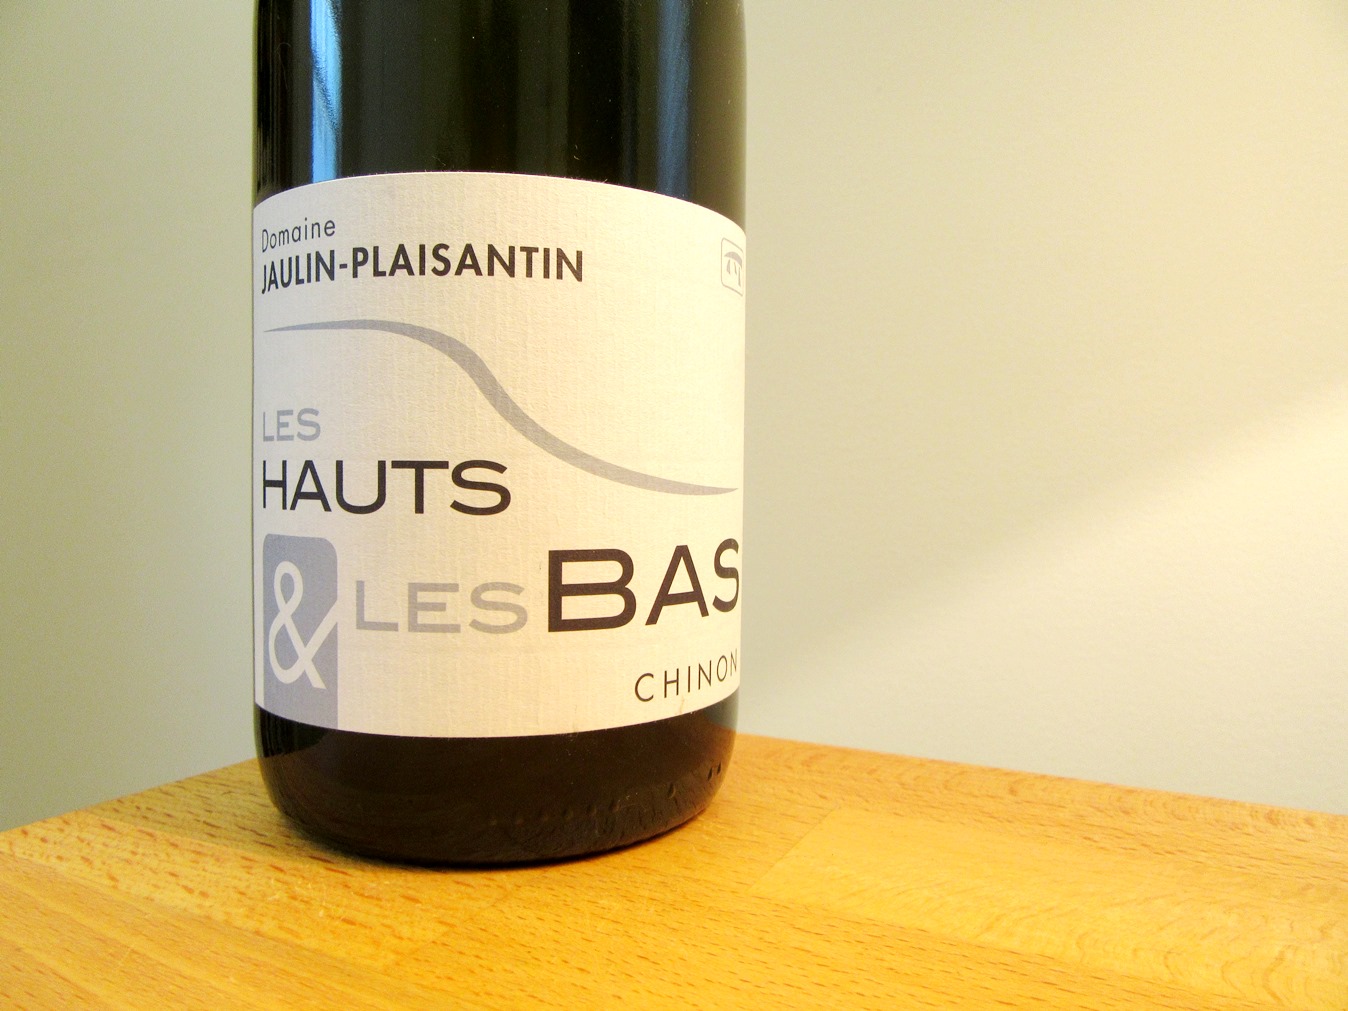 Domaine Jaulin-Plaisantin, Les Hauts & Les Bas Chinon 2014, Loire, France, Wine Casual